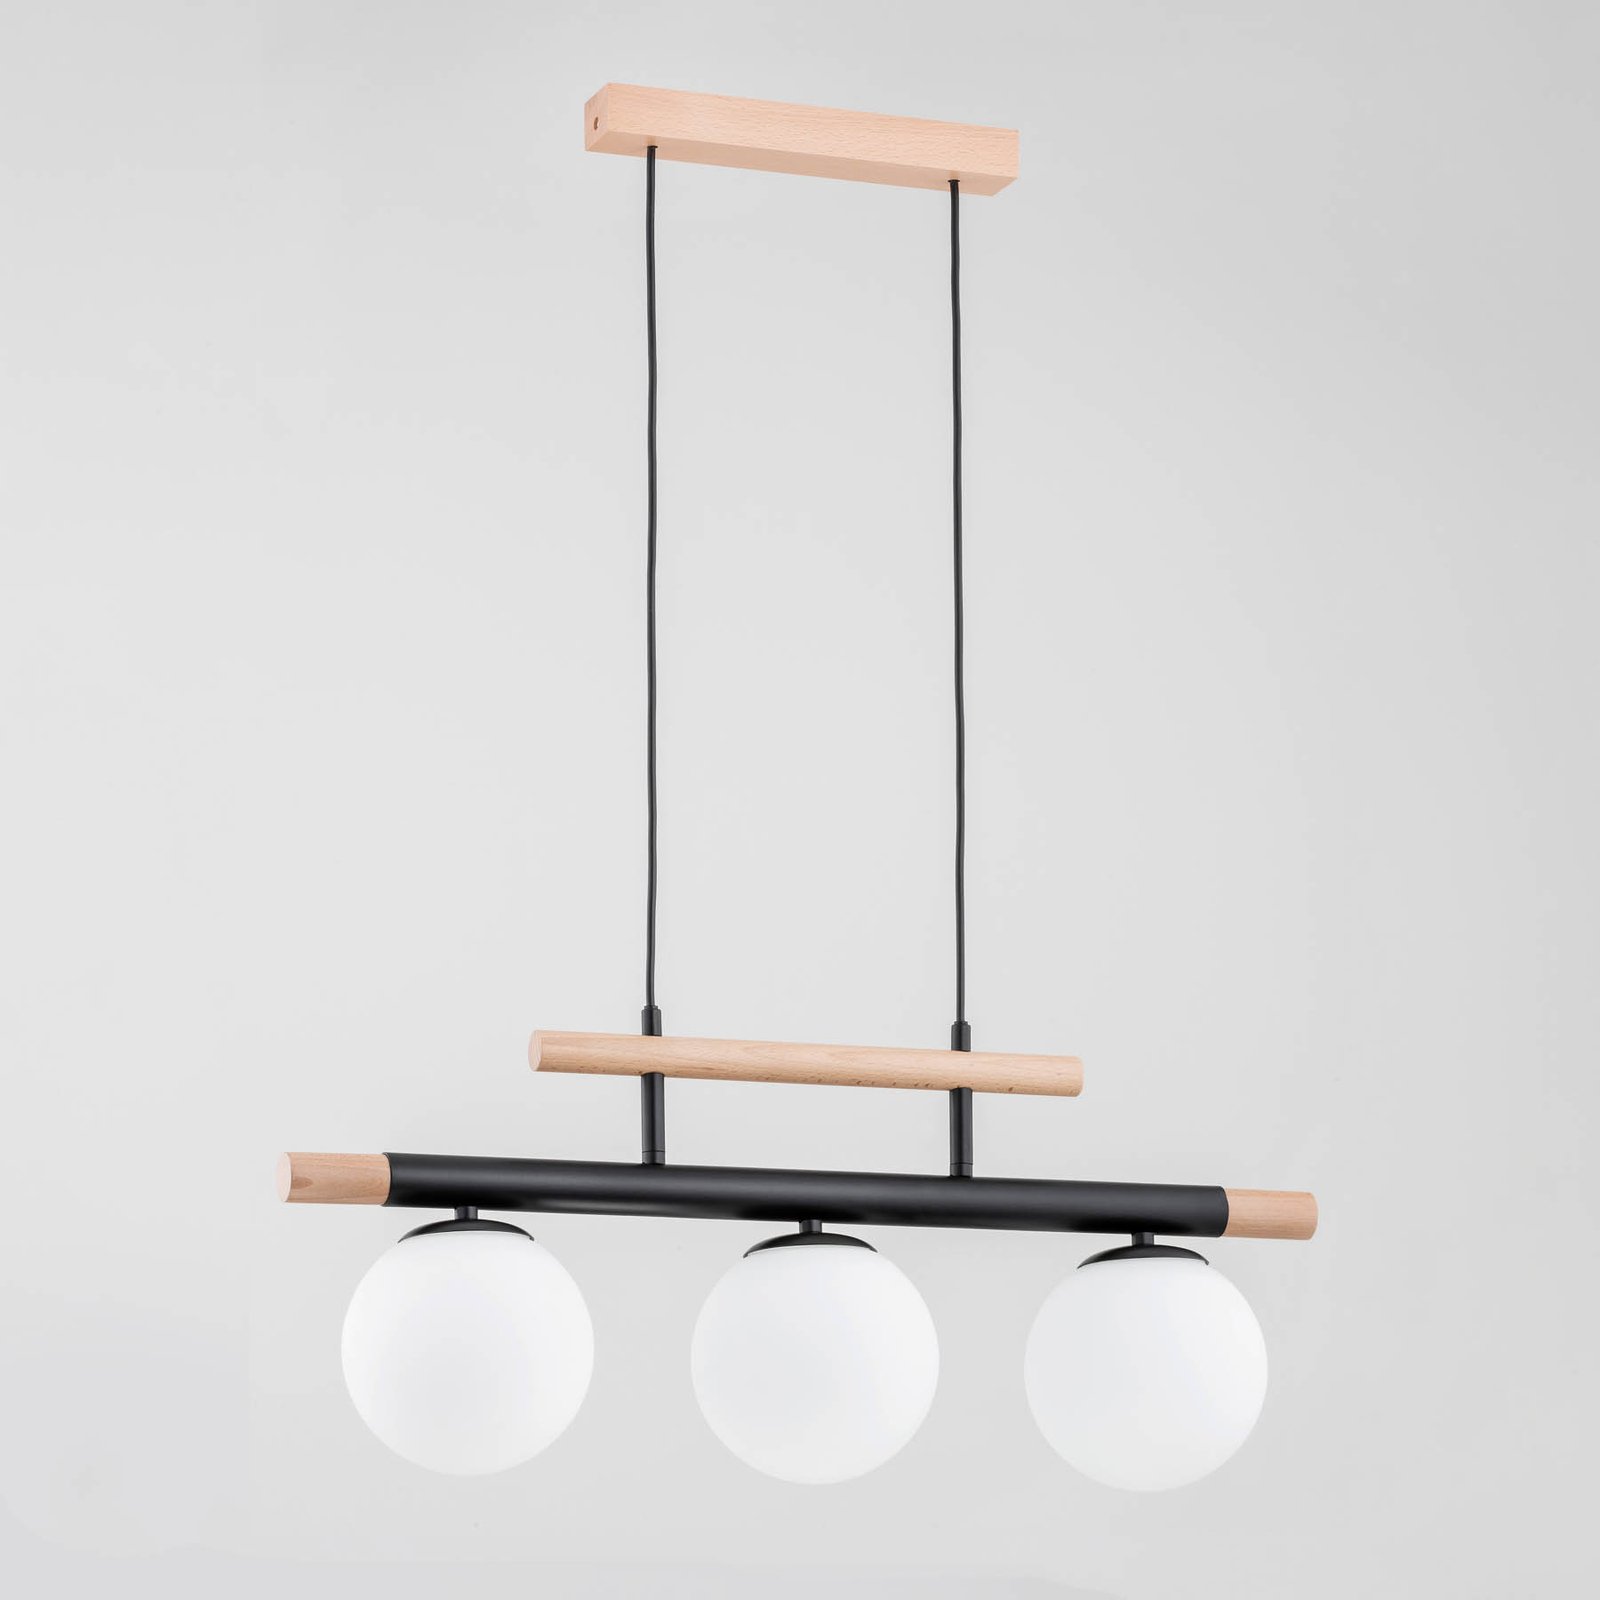 Trendy hanglamp van hout, 3-lamps